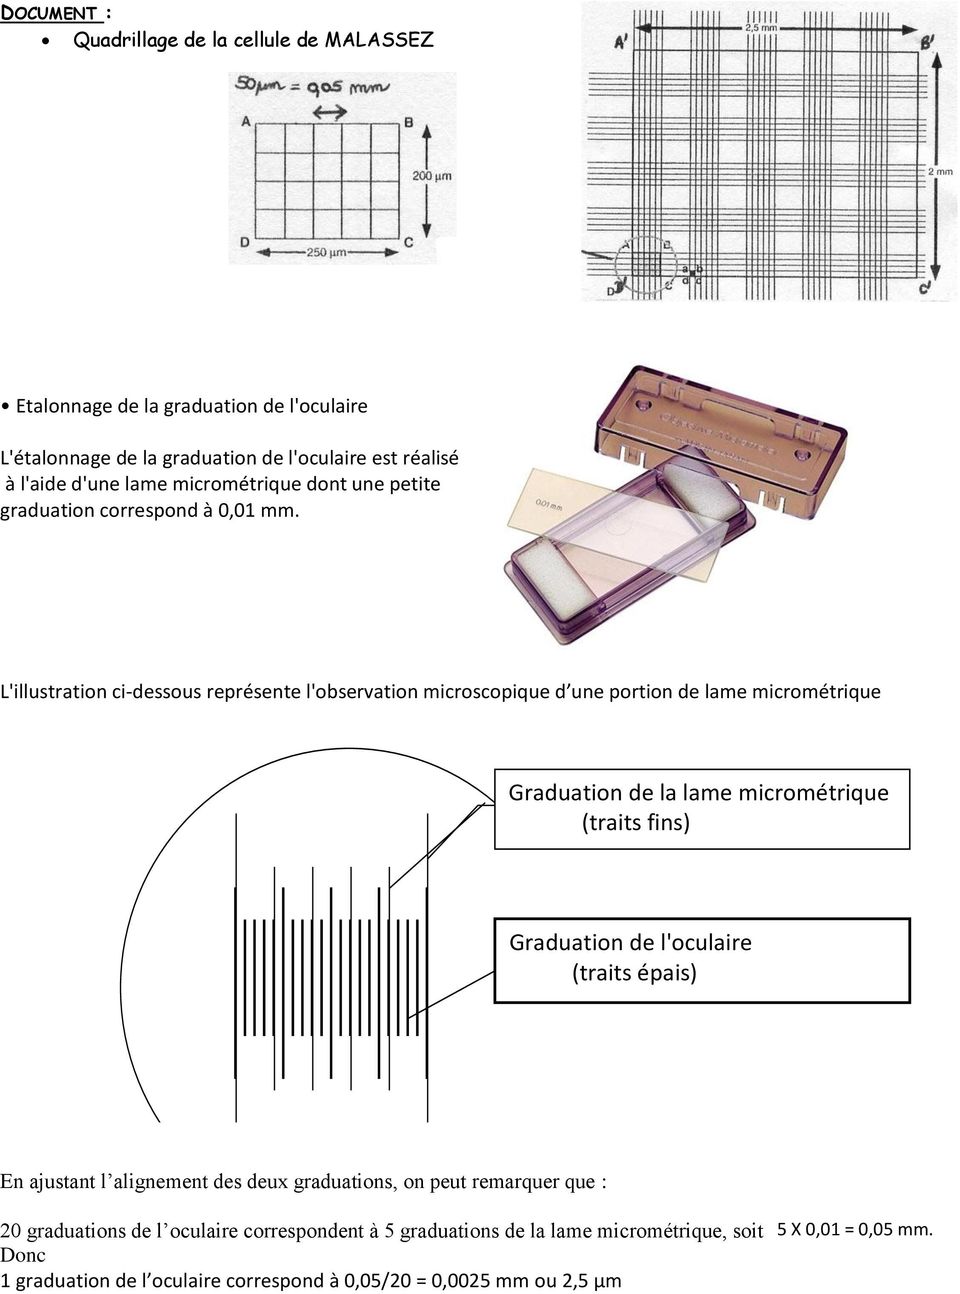 L'illustration ci-dessous représente l'observation microscopique d une portion de lame micrométrique Graduation de la lame micrométrique graduation de la lame (traits micrométrique fins)